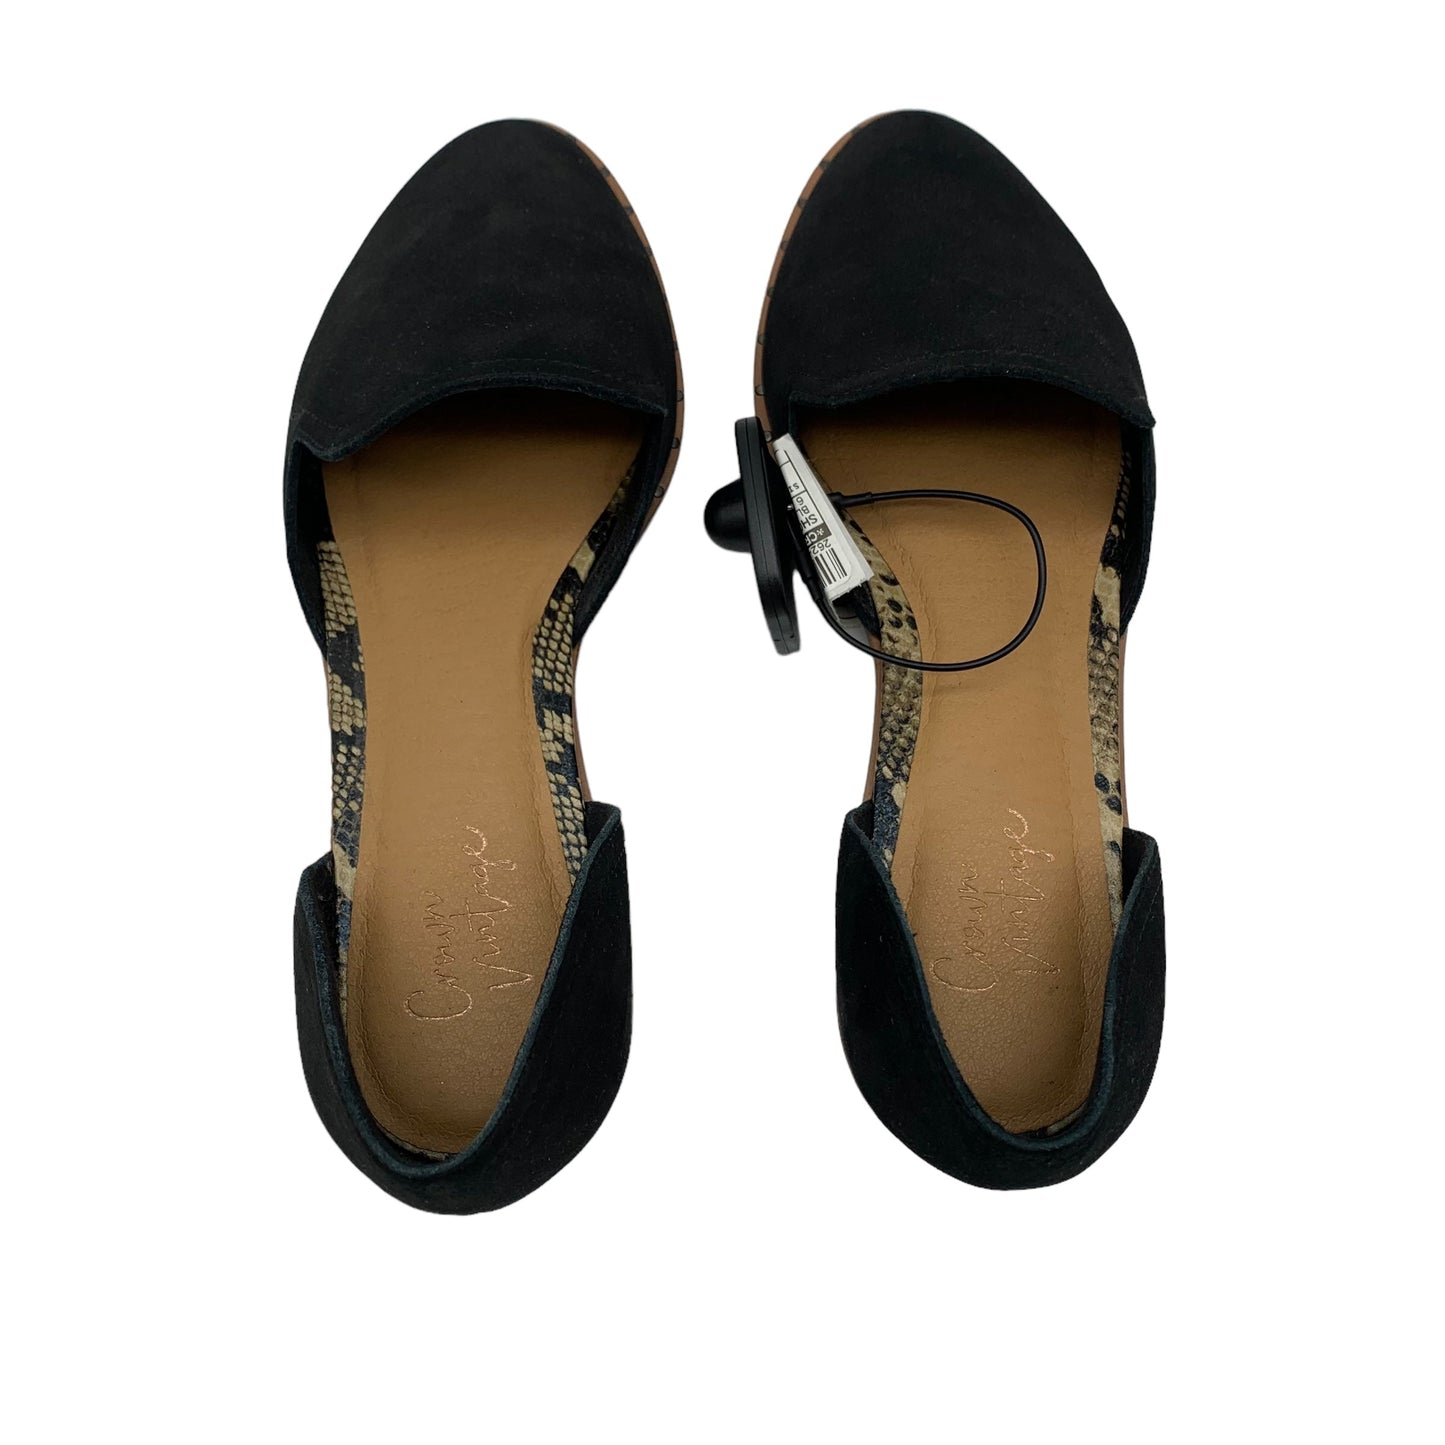 Black Shoes Flats Crown Vintage, Size 6.5